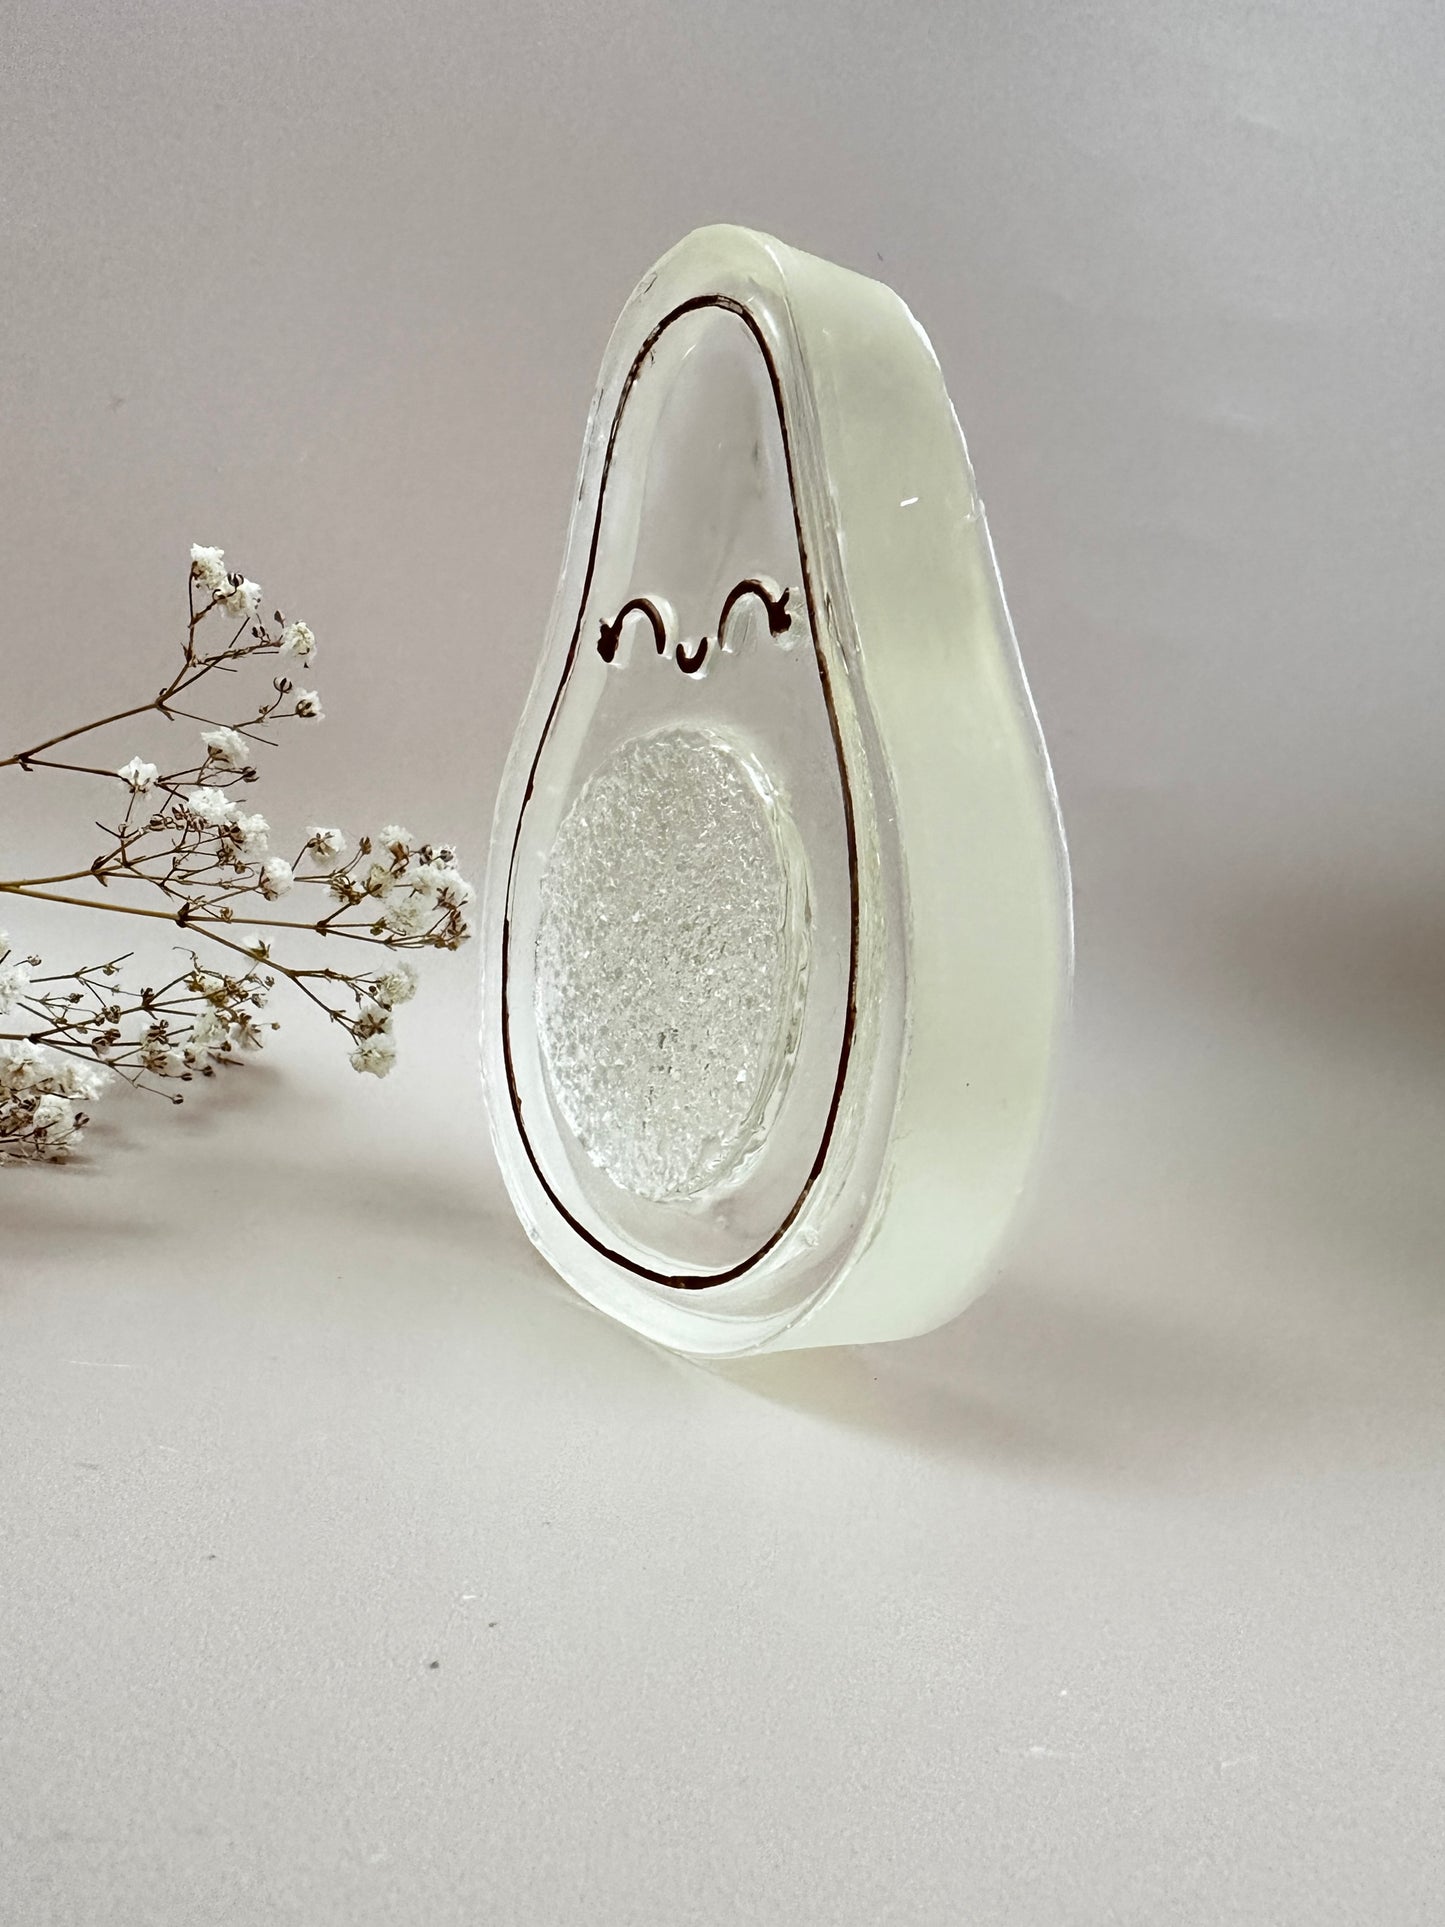 Große Avocado mit Kristallen Silikonform, einzigartiges Bastelzubehör für DIY-Dekorationen, perfektes Geschenk für Bastelliebhaber